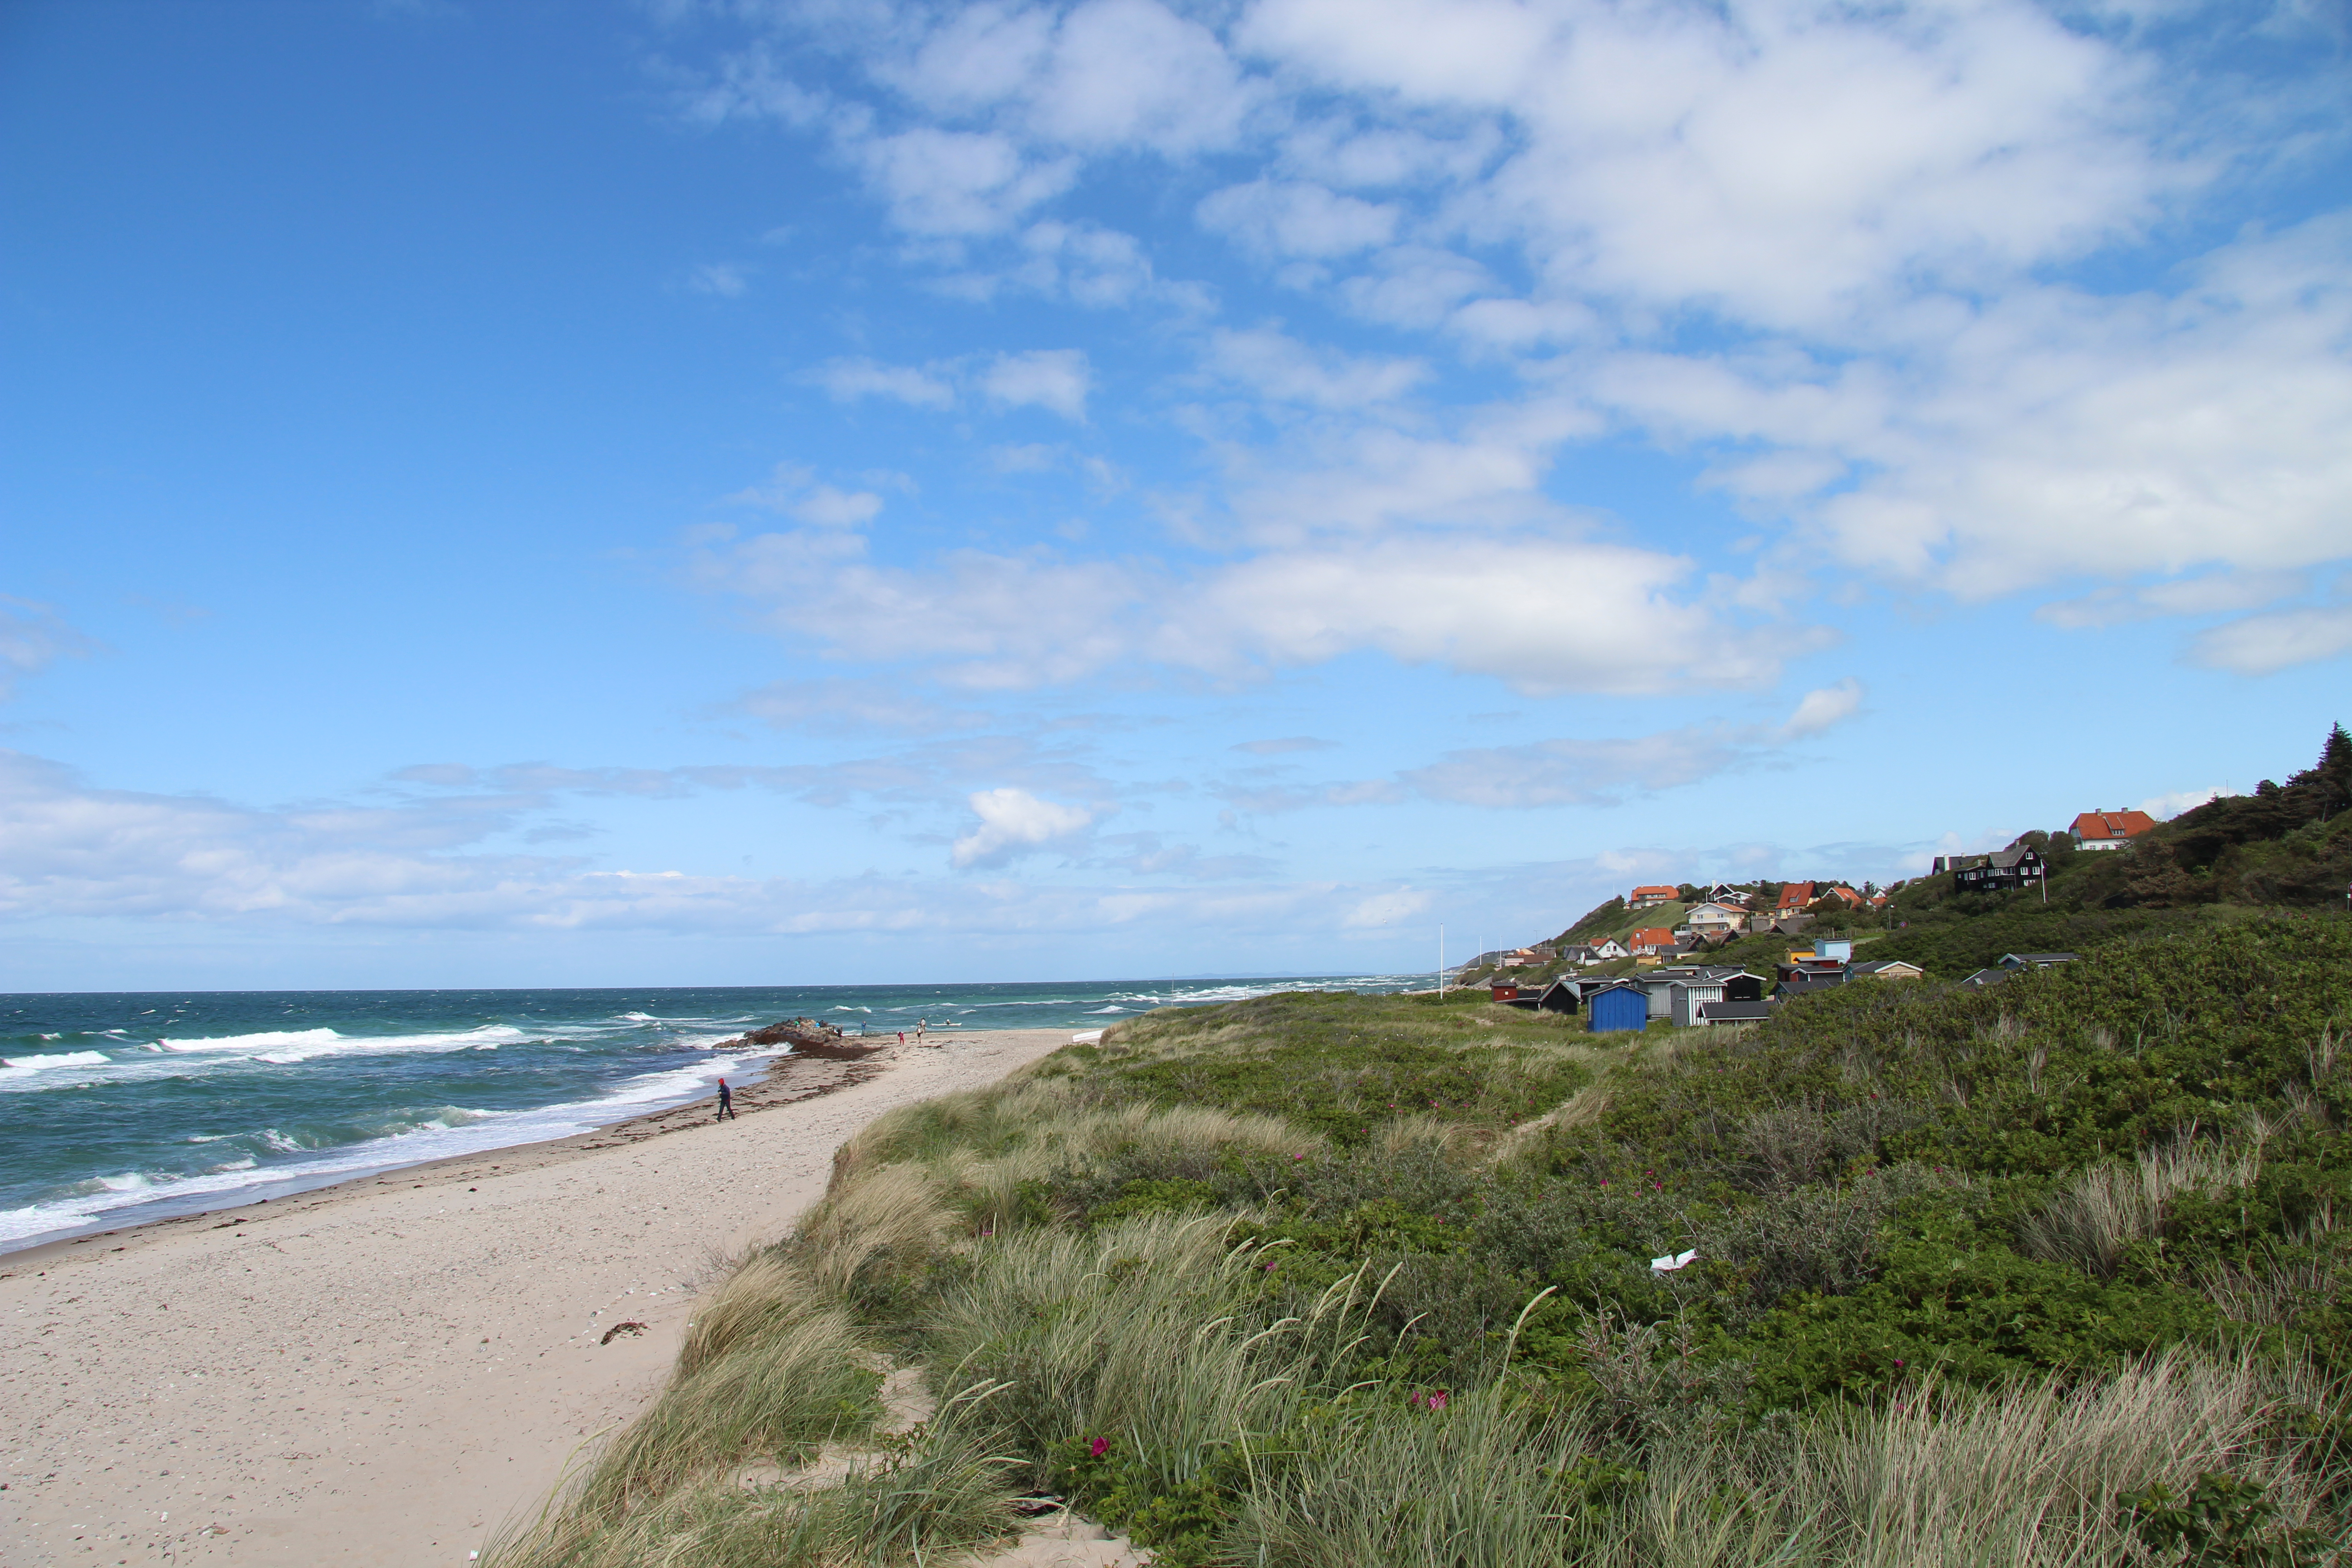 Denmark's best beaches | Find your perfect beach in Denmark